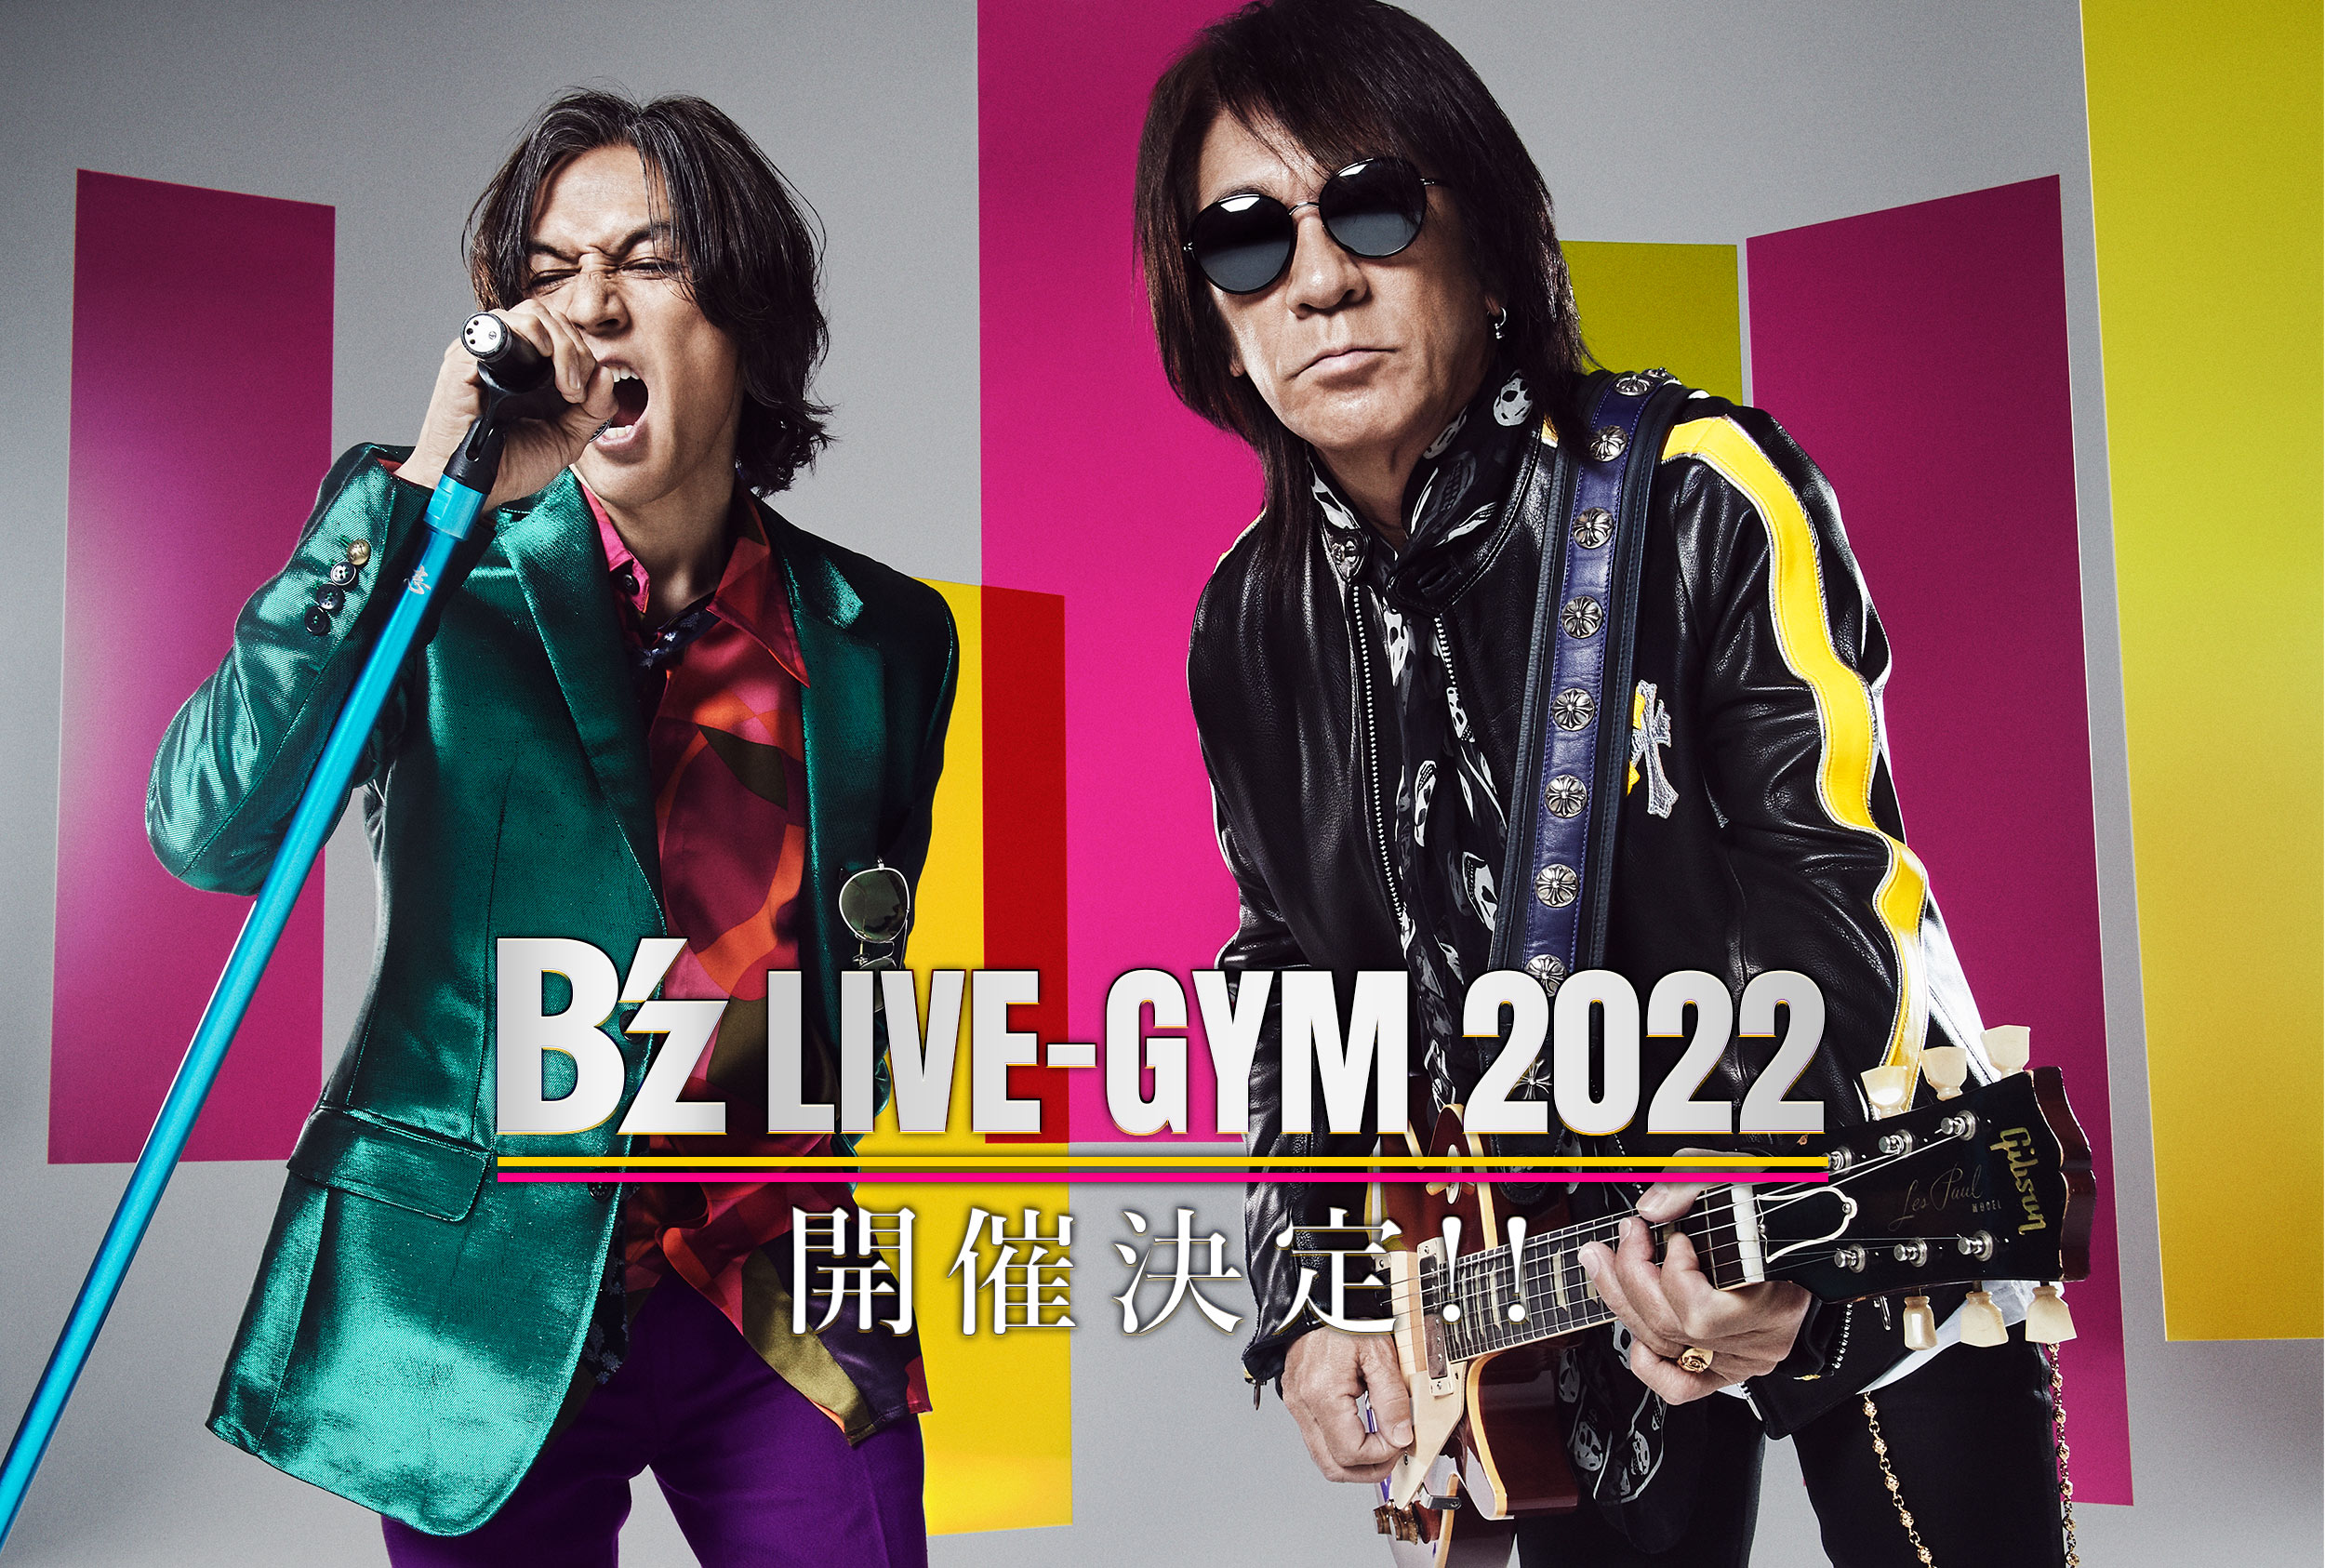 『B'z LIVE-GYM 2022』の告知画像